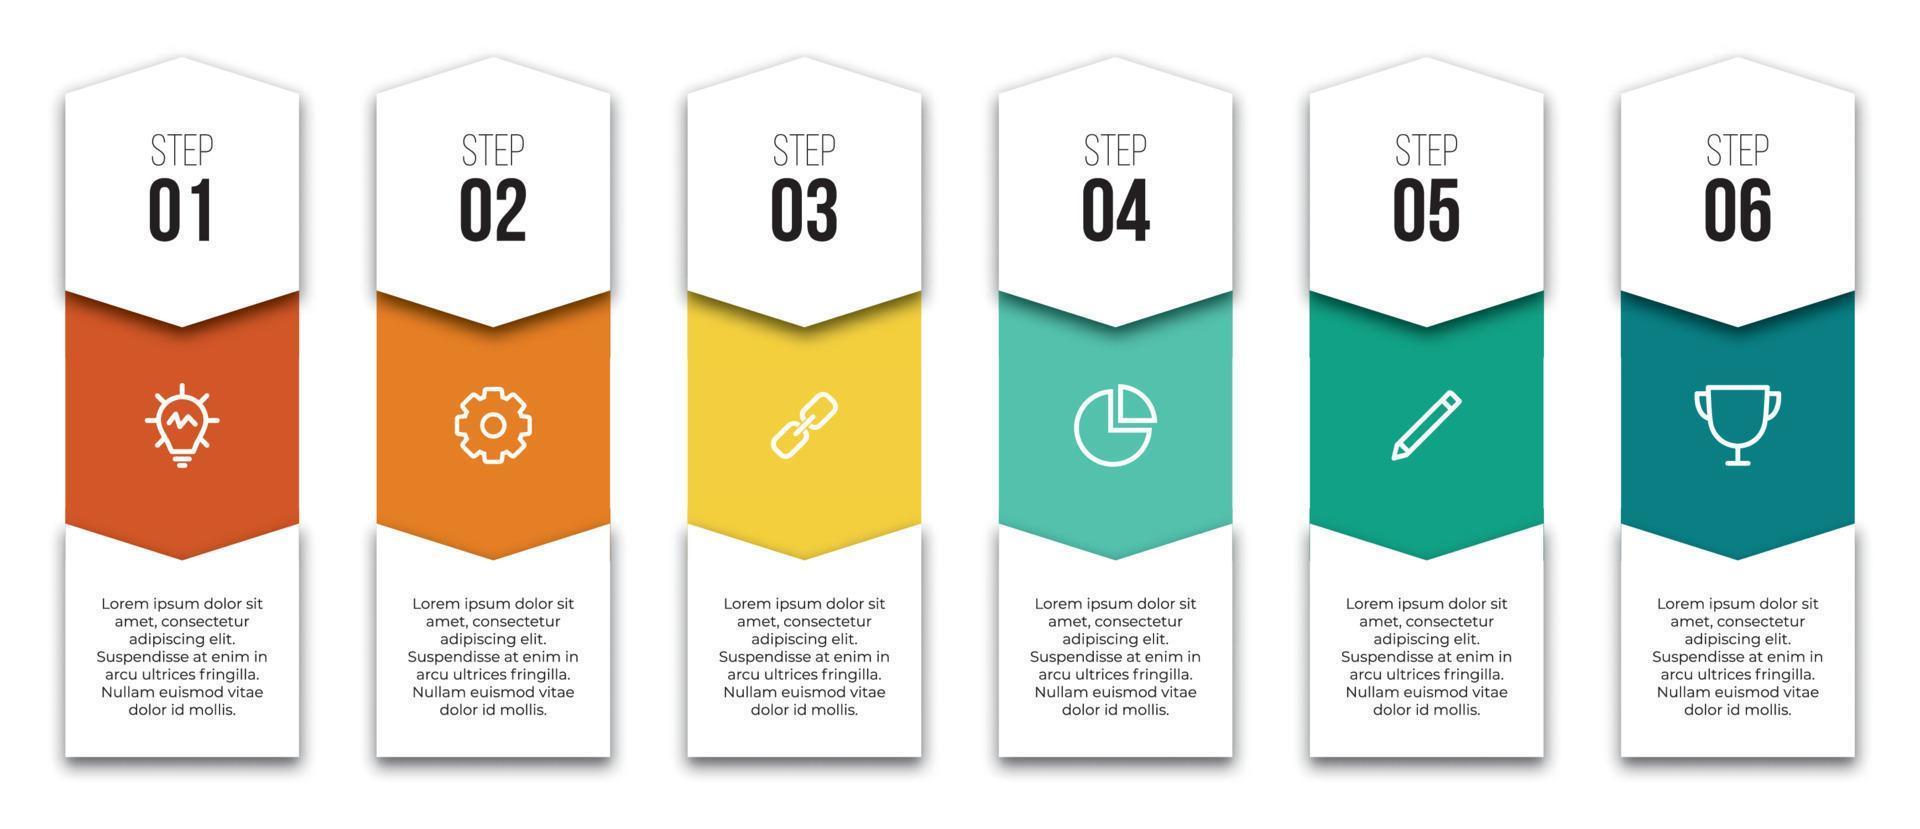 6 points of stappen lay-out ontwerp met pictogrammen voor infografisch, brochure, presentatie, werkstroom, banier, werkwijze, enz. vector illustratie.